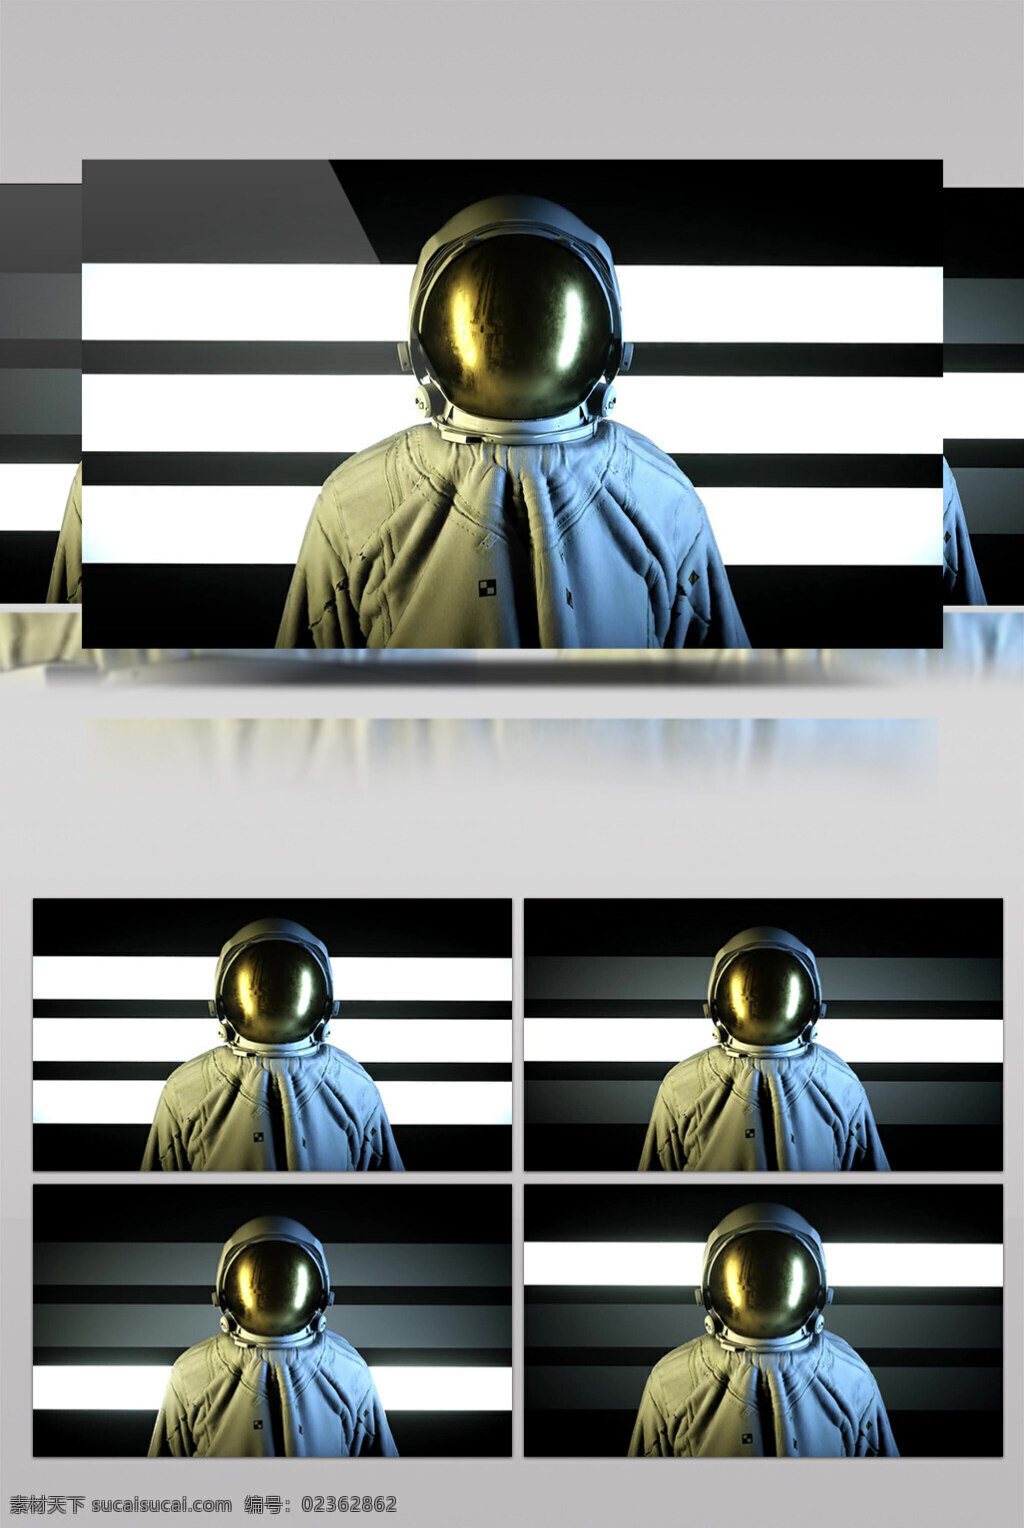 太空人 动态 视频 太空服装 生活抽象 画面意境 动态抽象 高清视频素材 特效视频素材